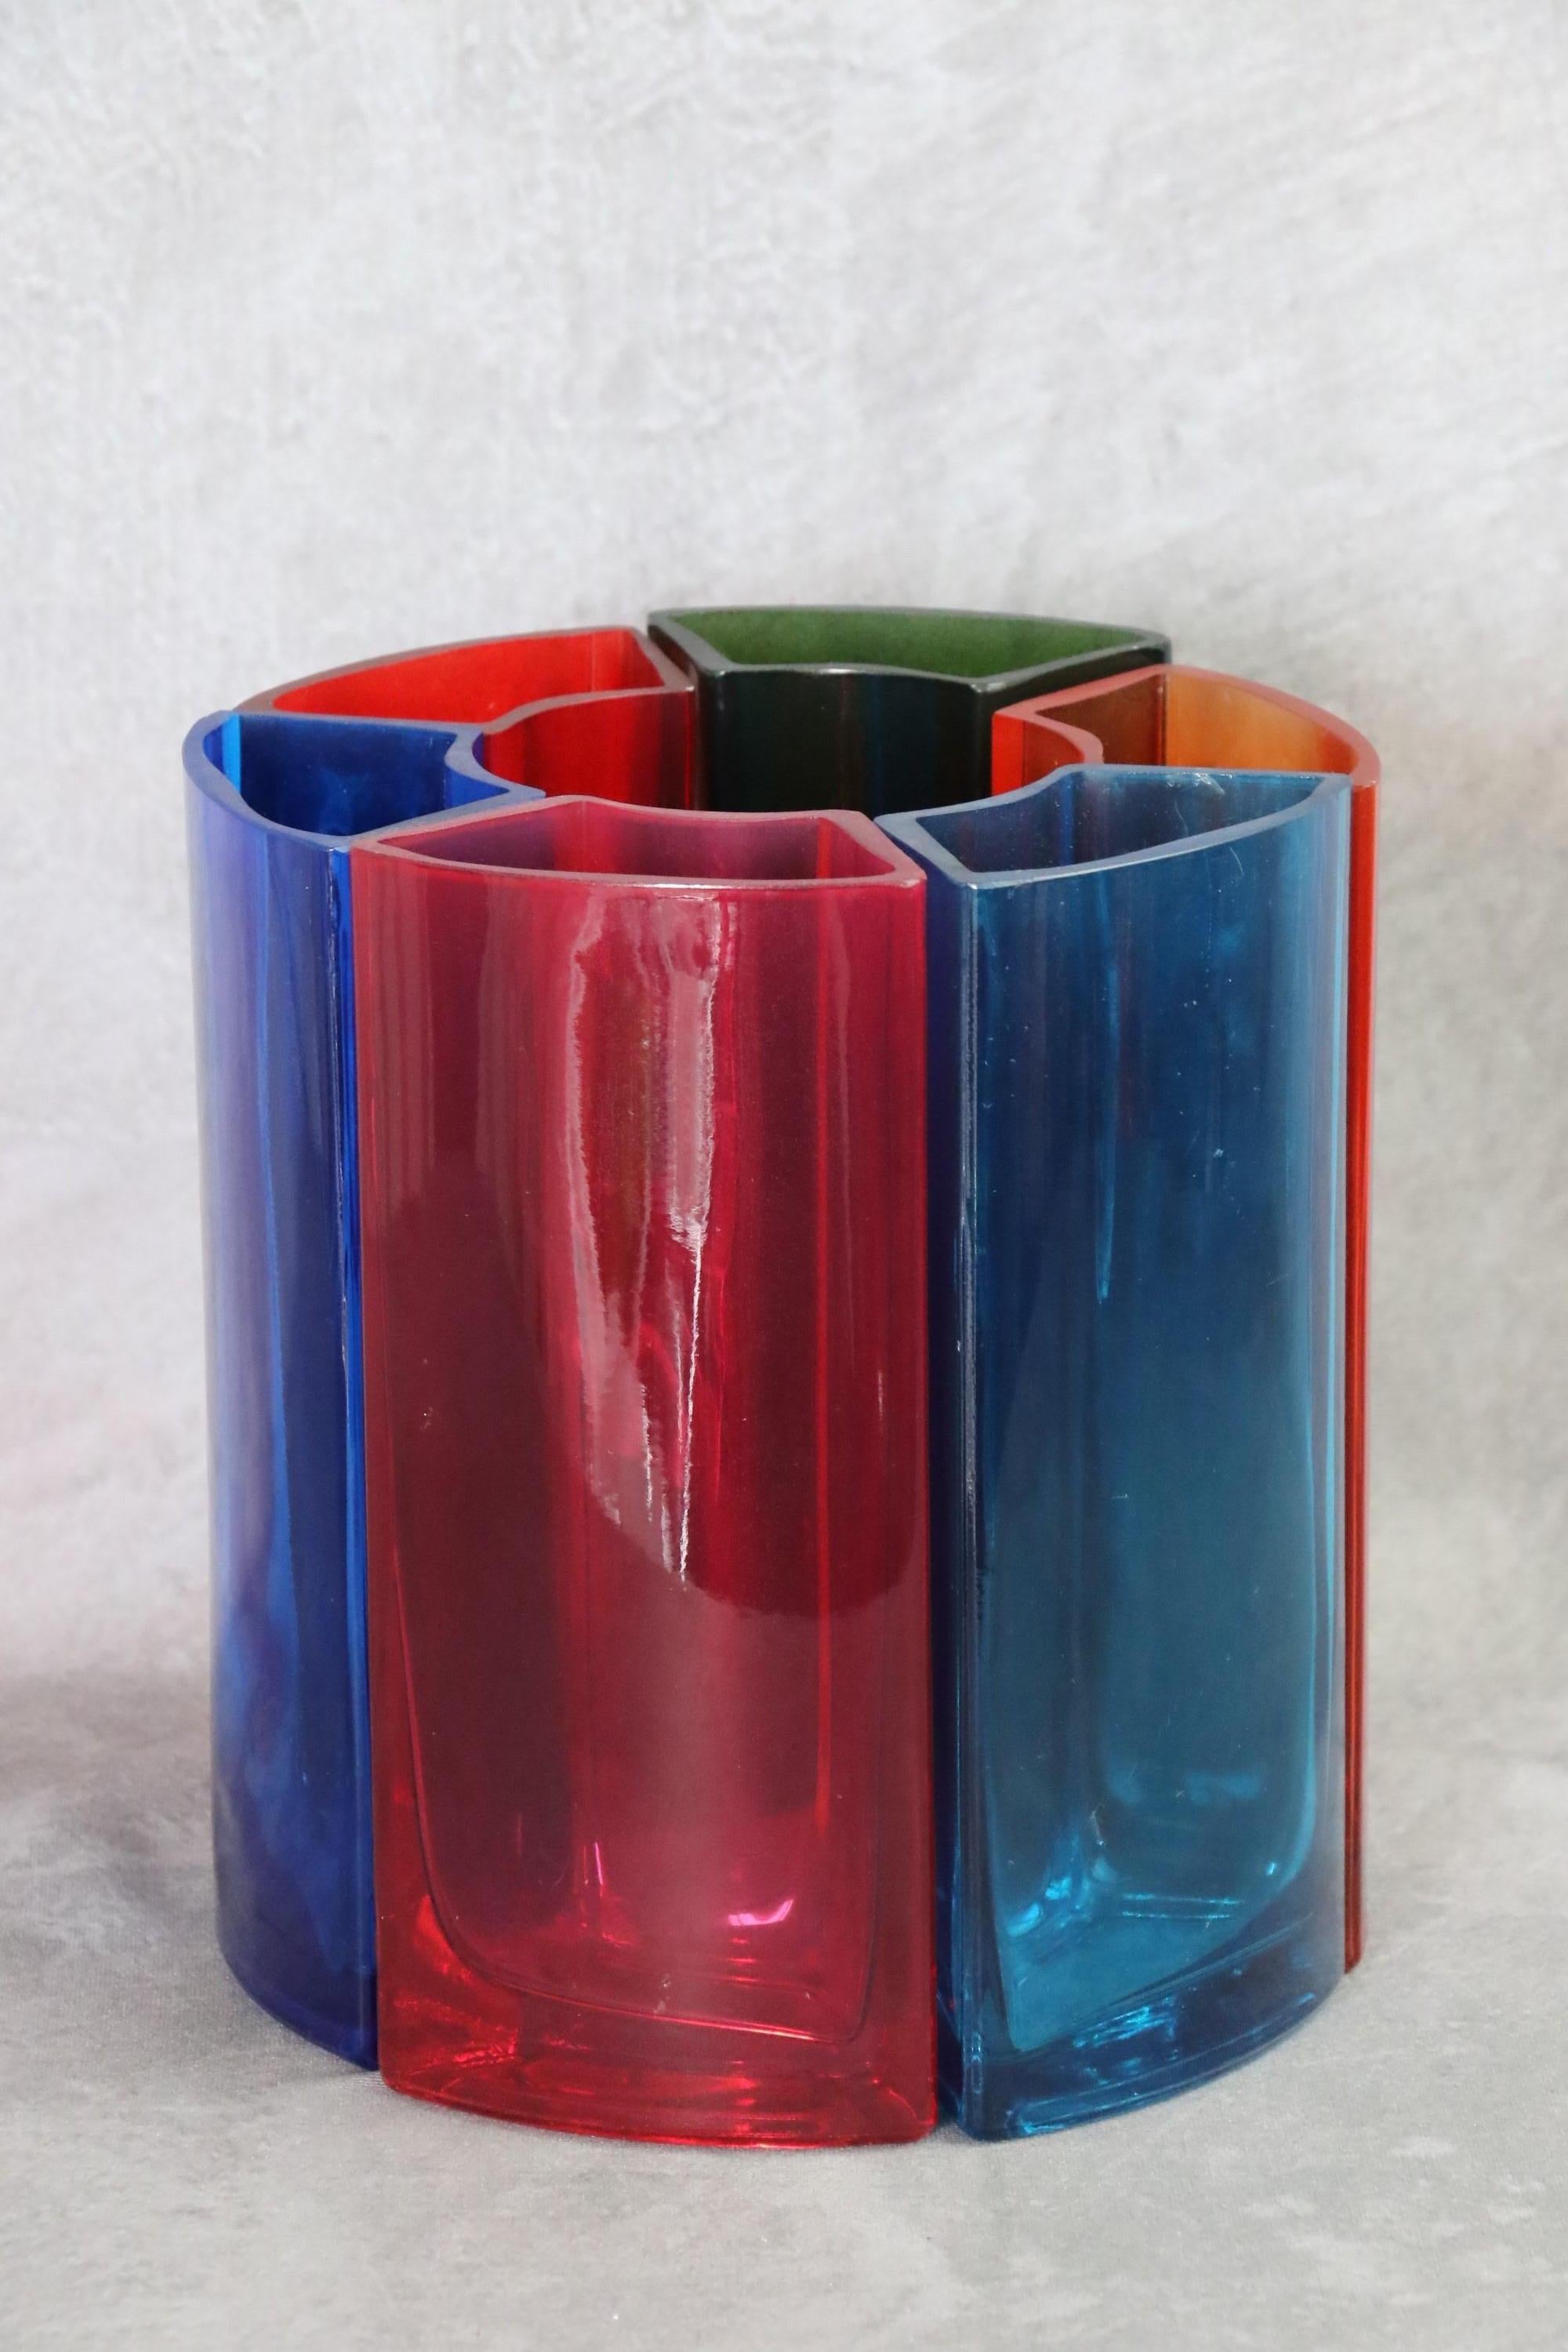 Mid-Century Modern Vase in Multicoloured Glass by Per Ivar Ledang, 90s, Scandinavian Design For Sale